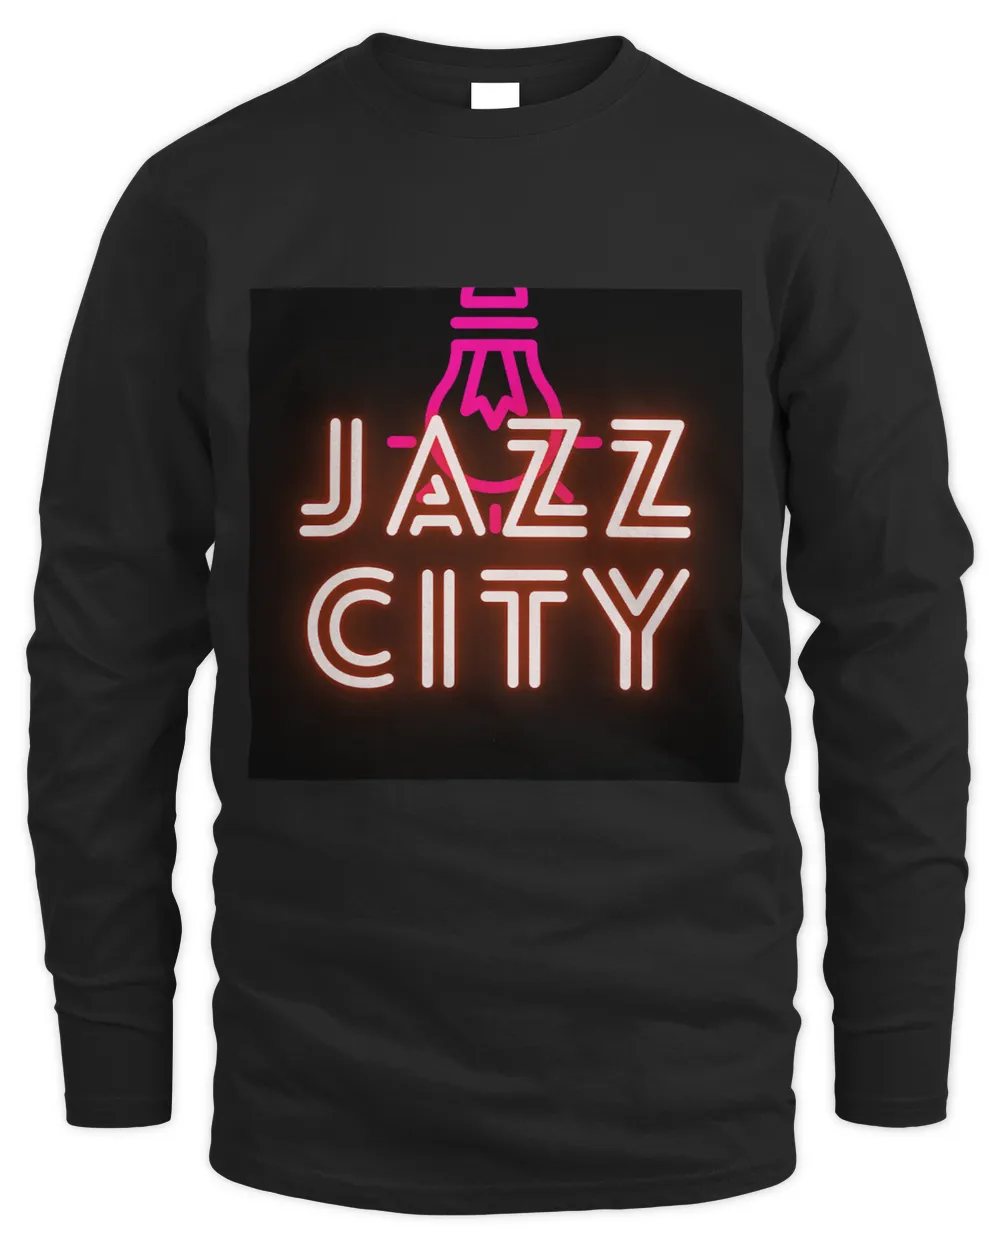 Jazz city